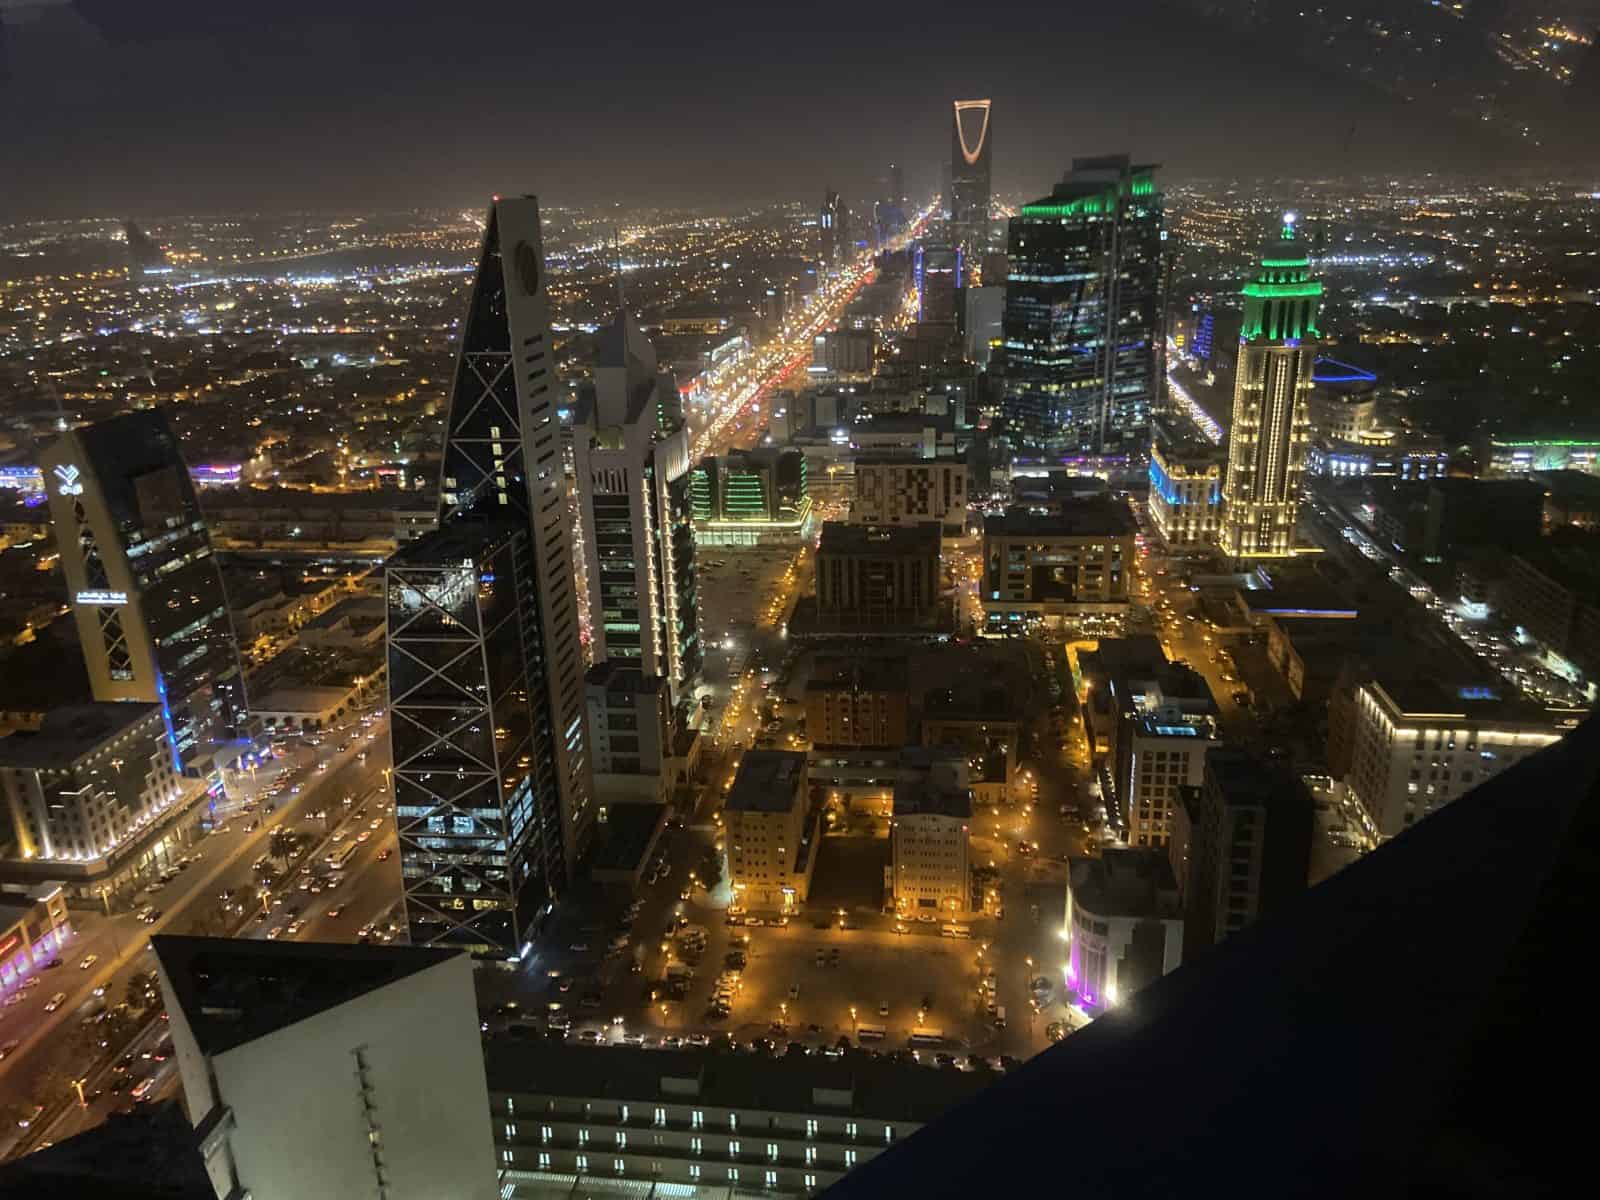 The view from atop the Al Faisaliah Centre in Riyadh, Saudi Arabia.